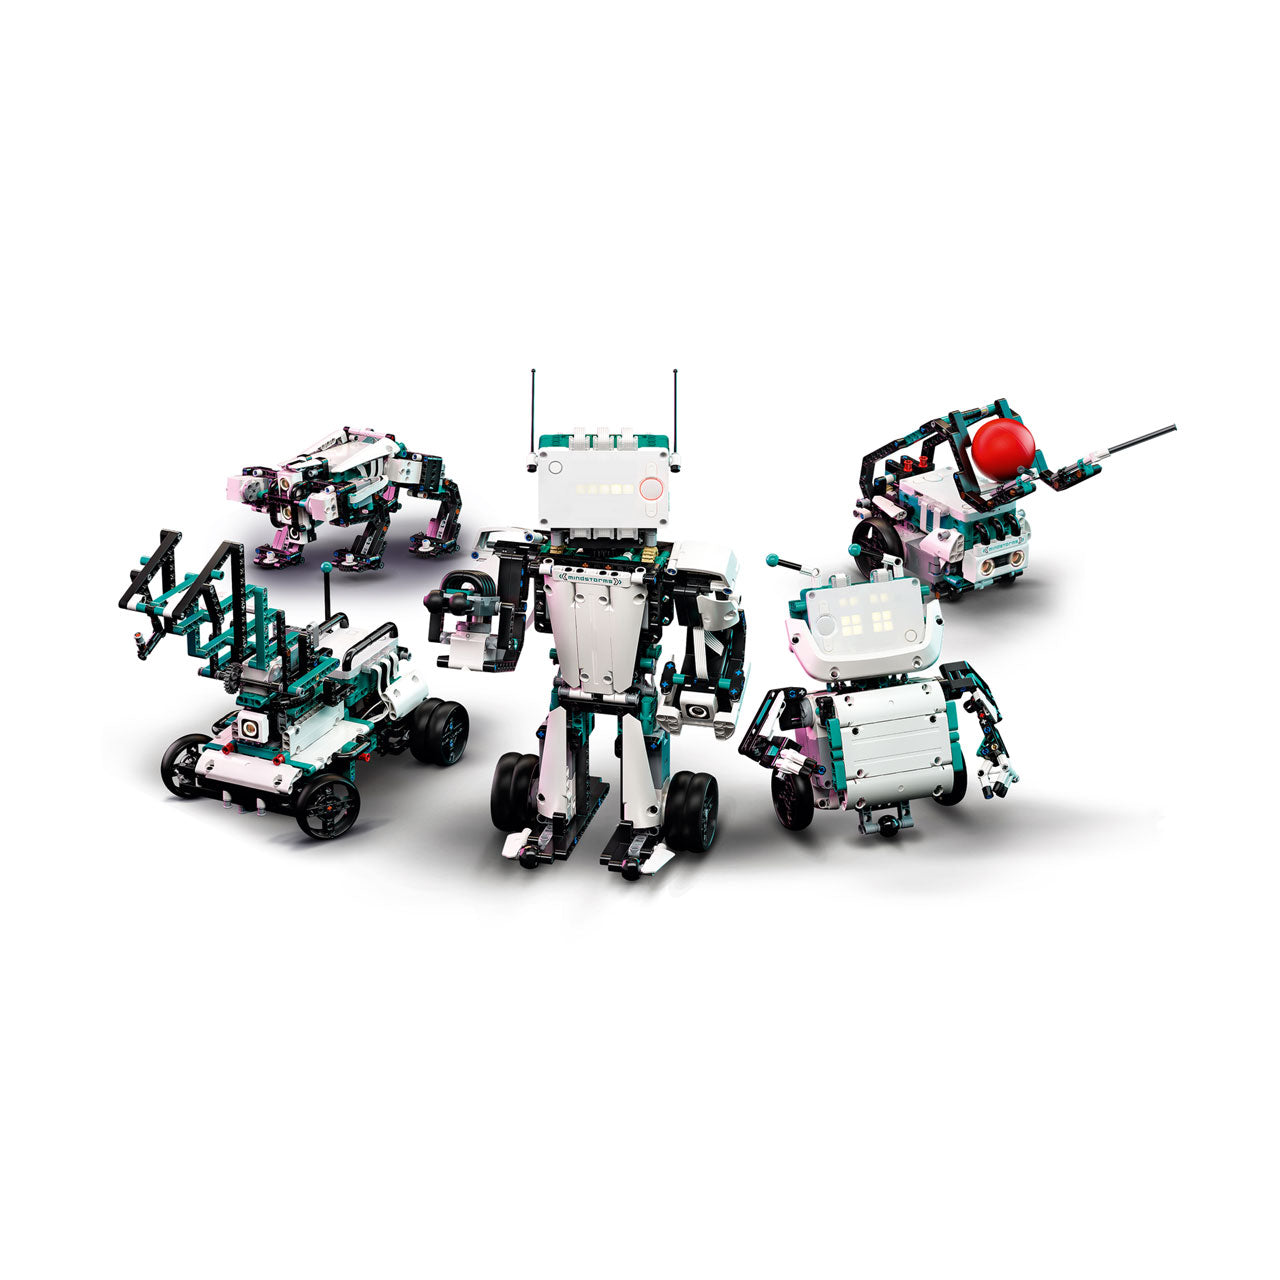 LEGO Mindstorms Robot Inventor Set